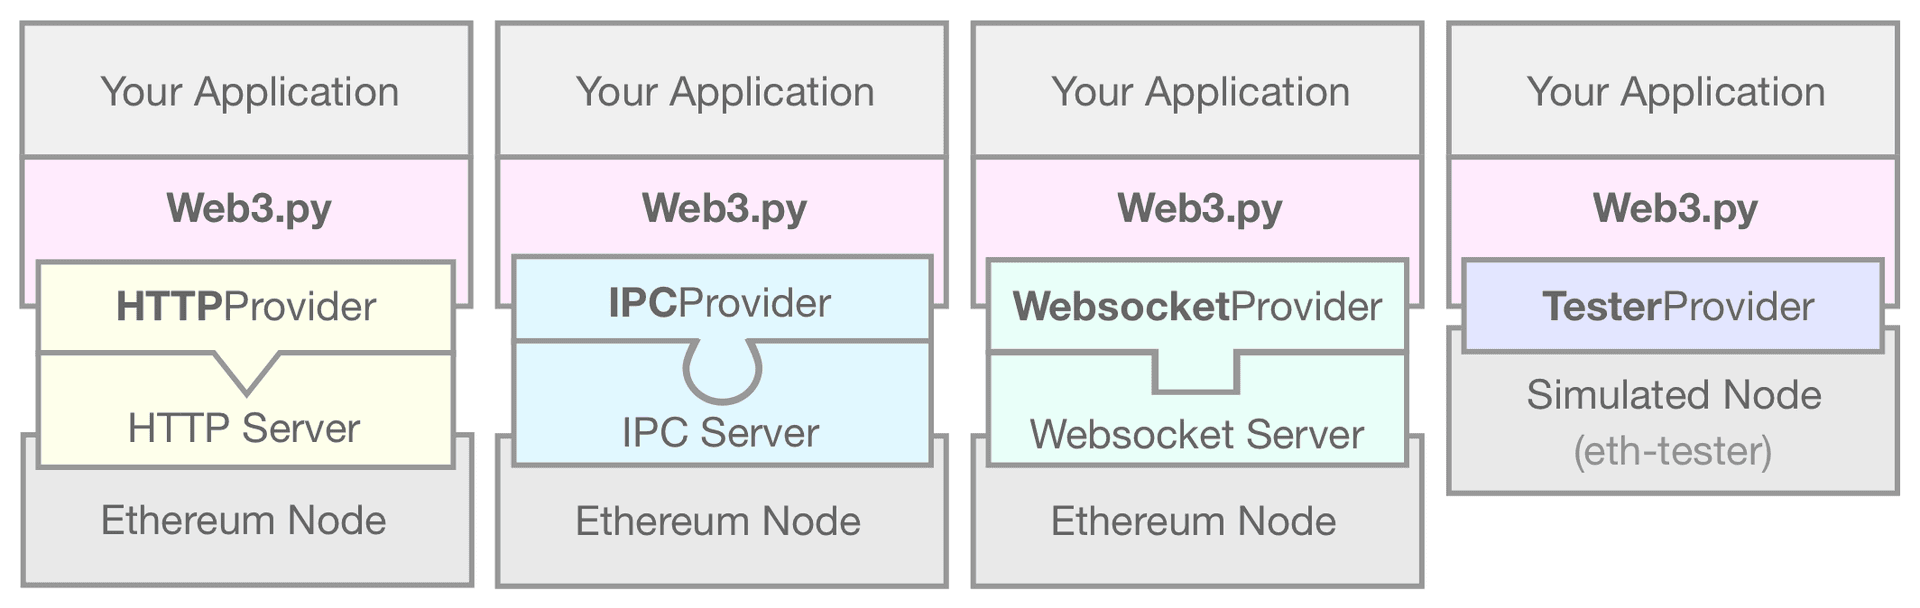 Un diagrama que muestra el EthereumTesterProvider vinculando su aplicación web3.py a un nodo simulado de Ethereum